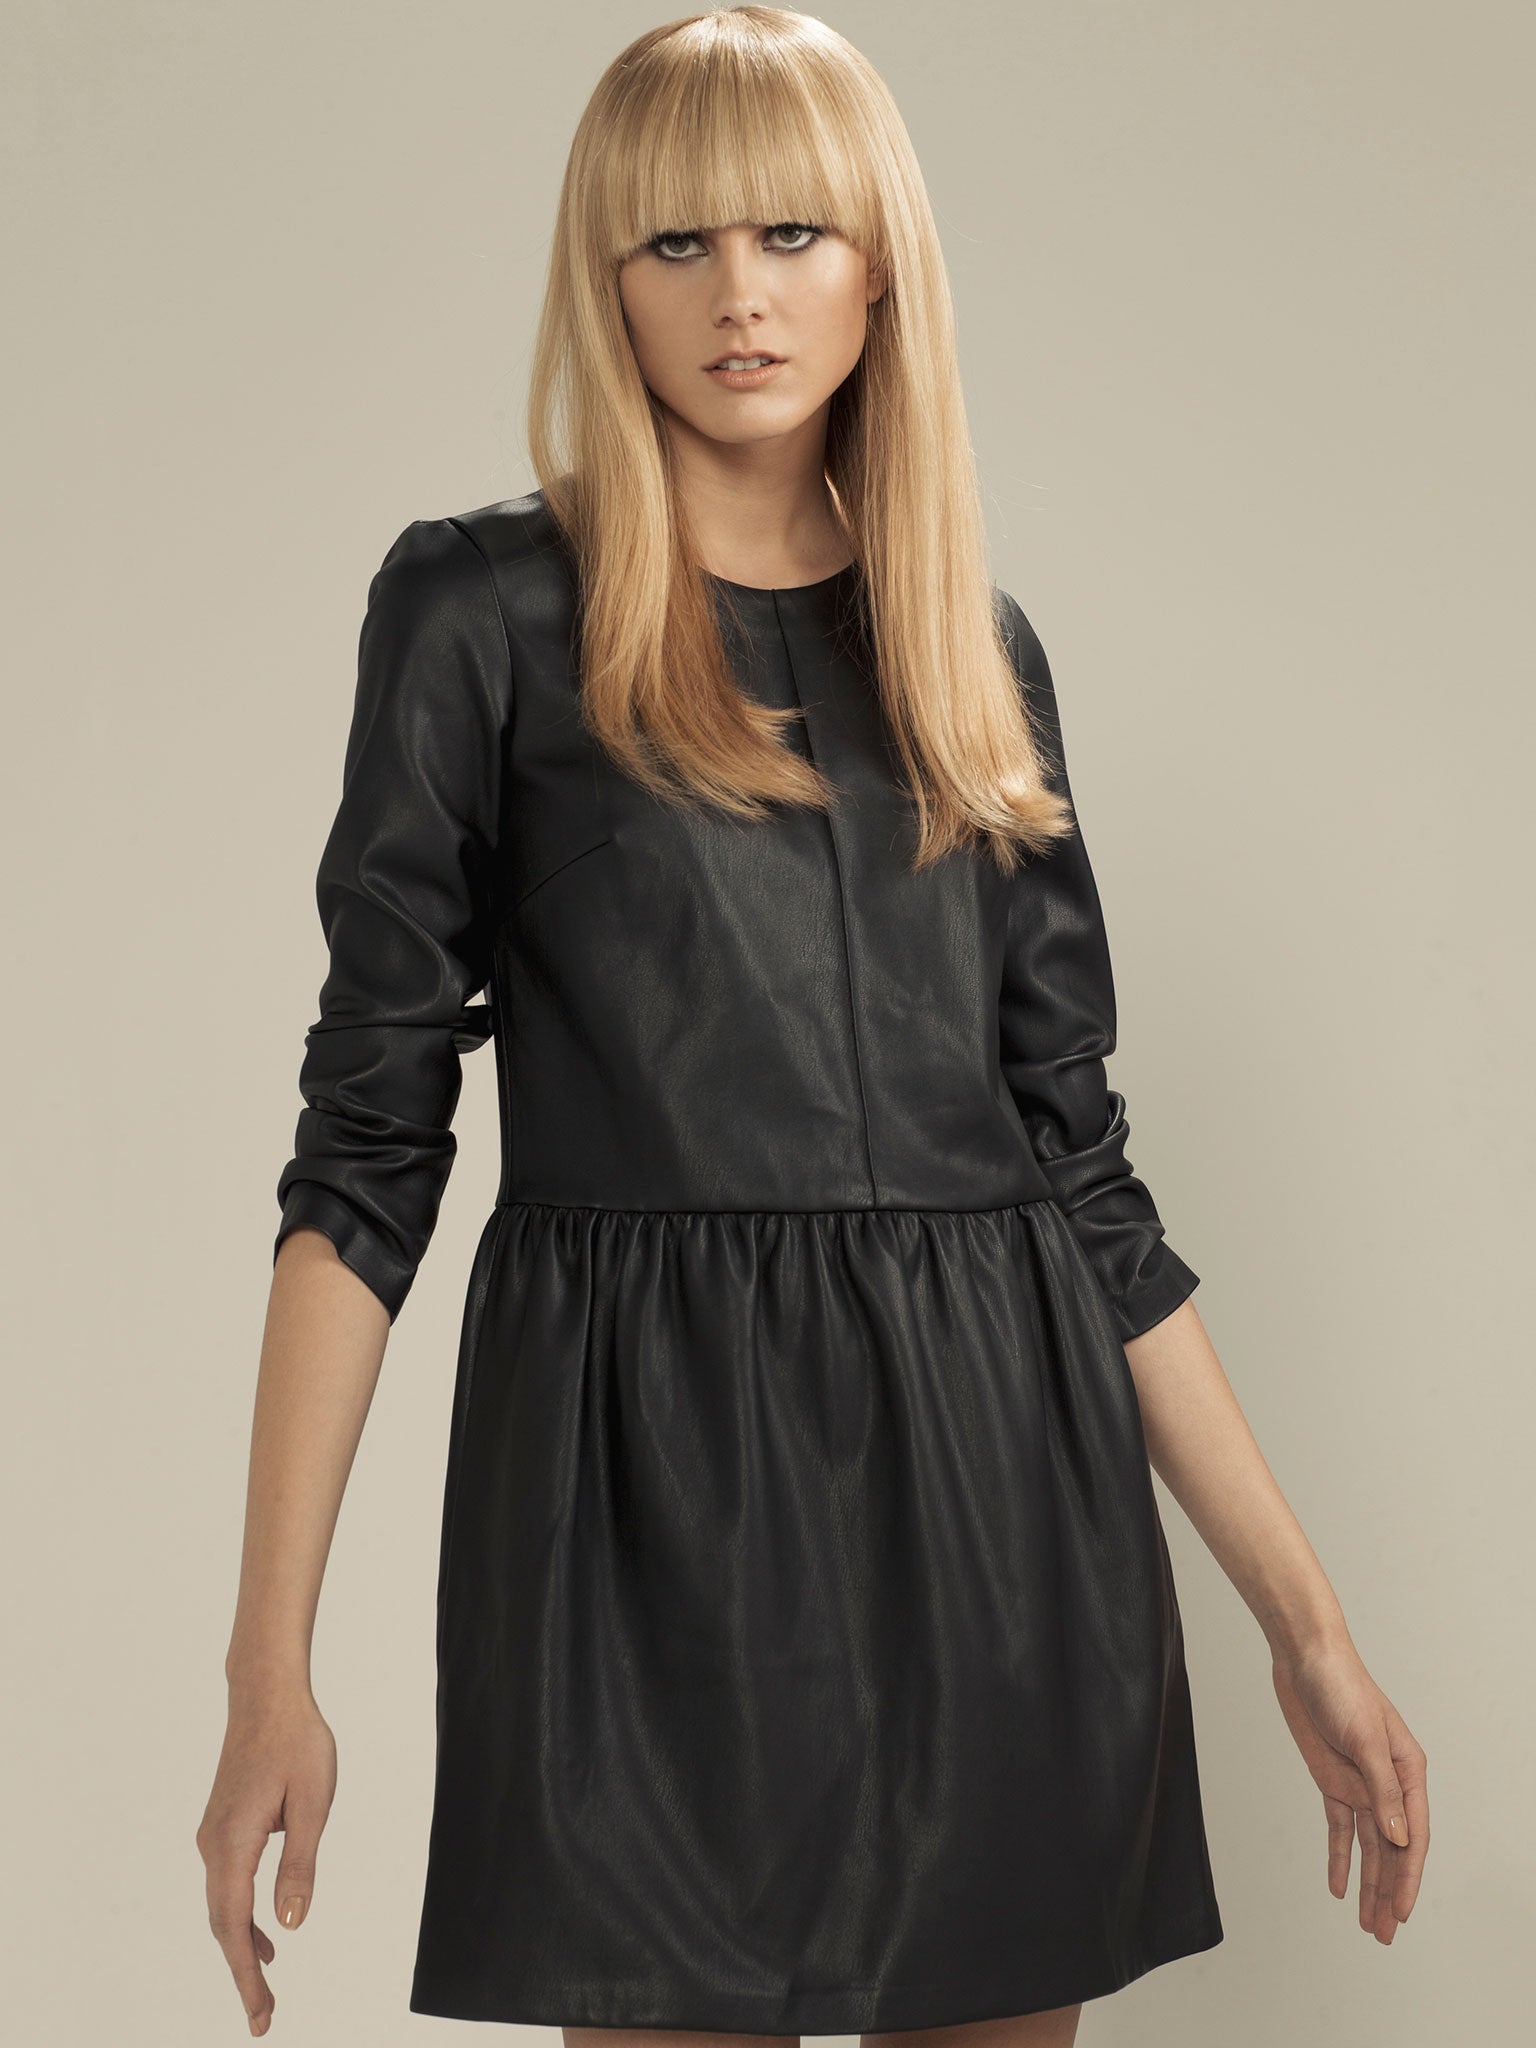 Faux leather dress, £26, zara.com